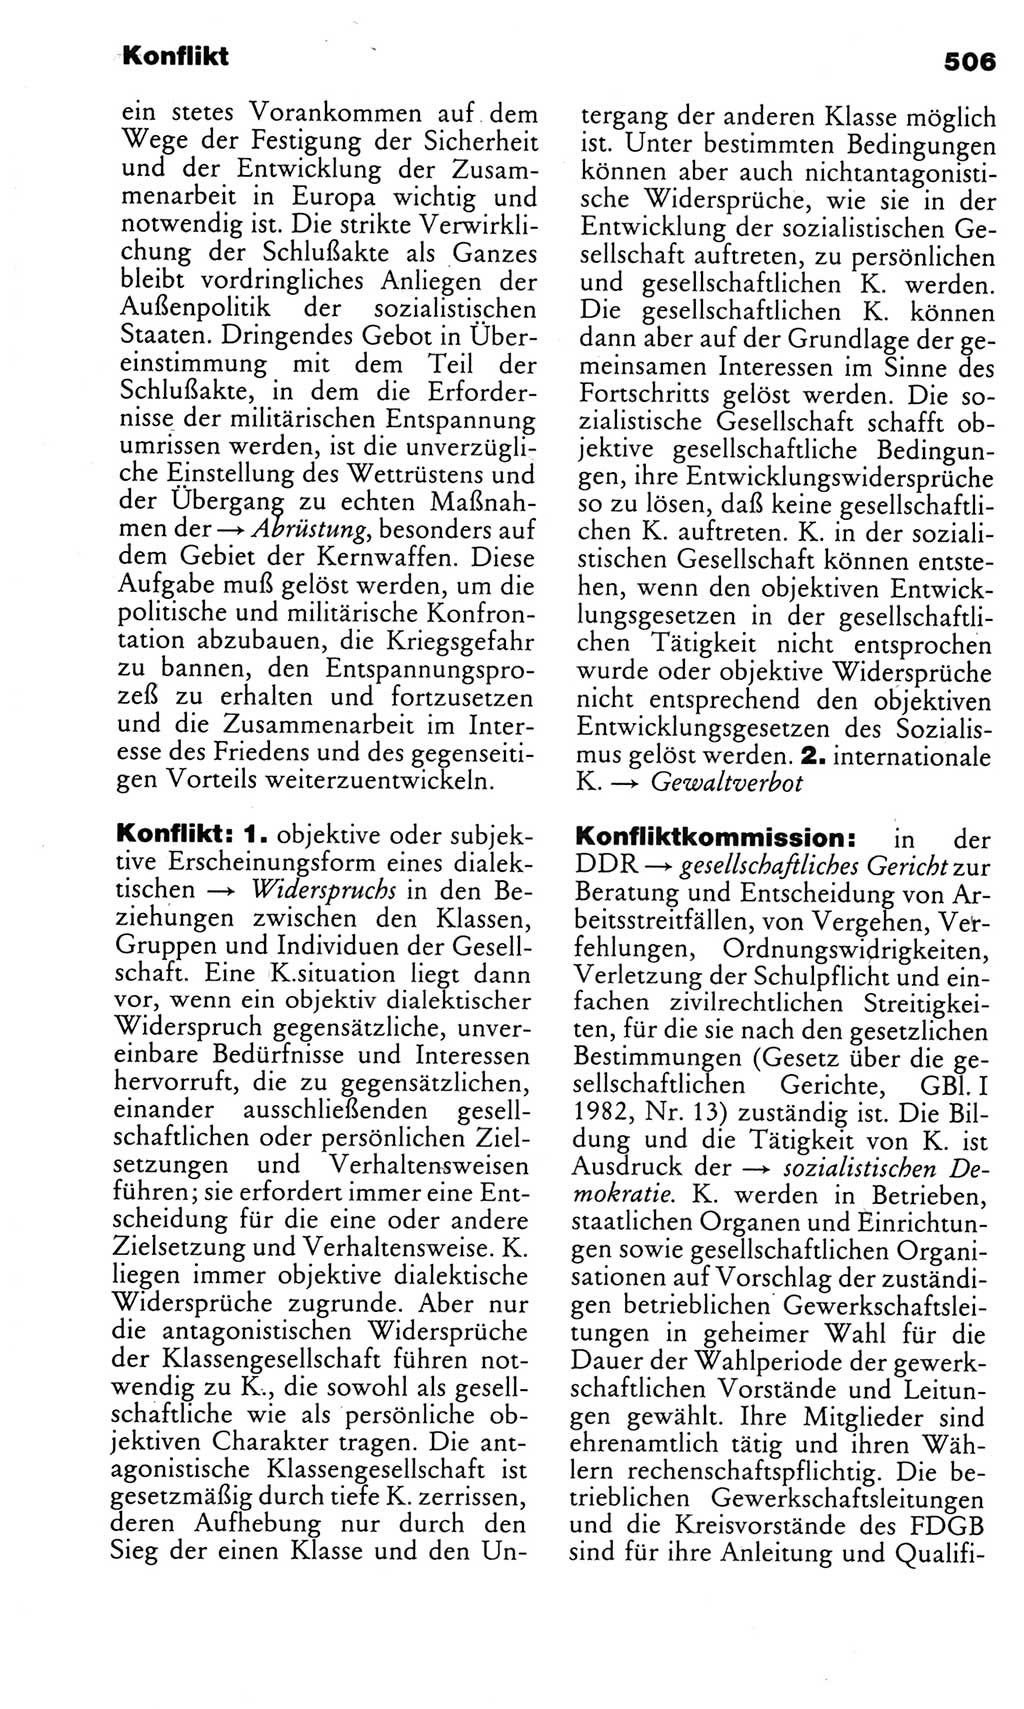 Kleines politisches Wörterbuch [Deutsche Demokratische Republik (DDR)] 1983, Seite 506 (Kl. pol. Wb. DDR 1983, S. 506)